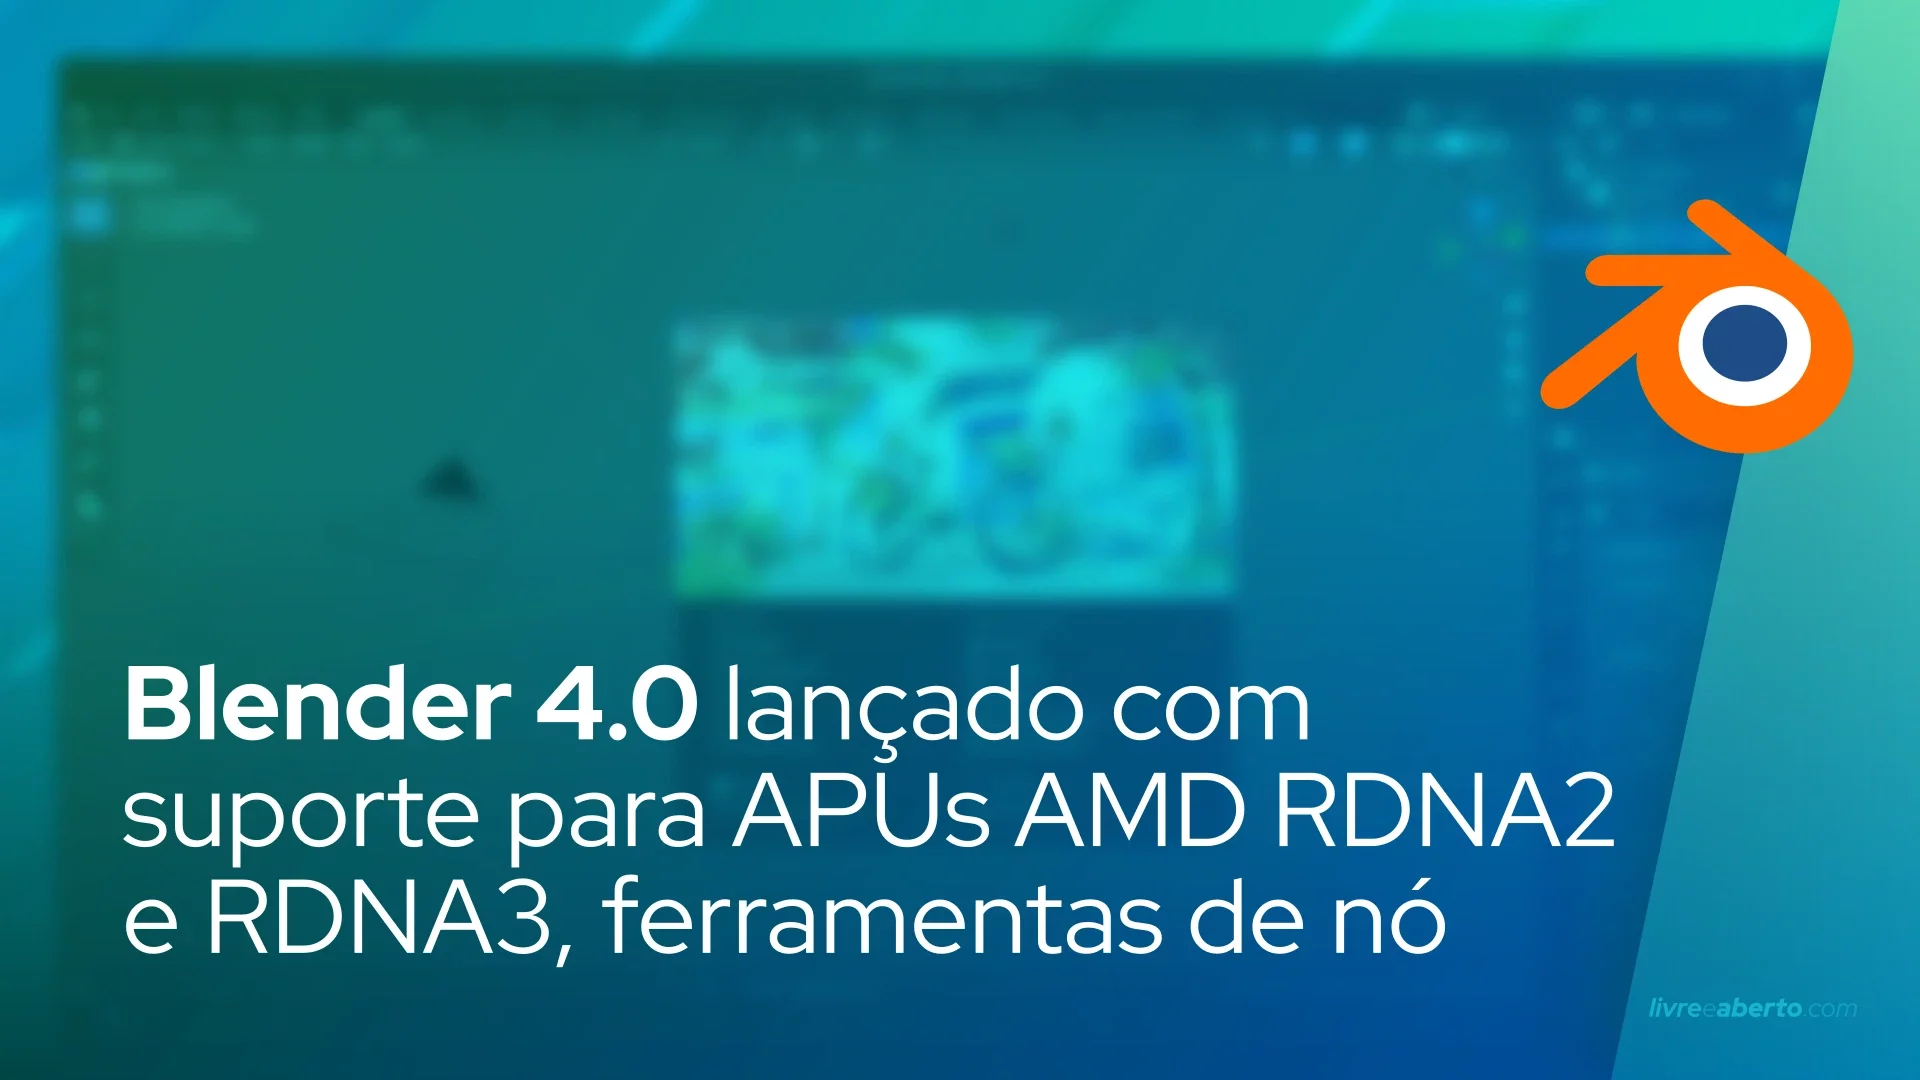 Blender 4.0 lançado com suporte para APUs AMD RDNA2 e RDNA3, ferramentas de nó